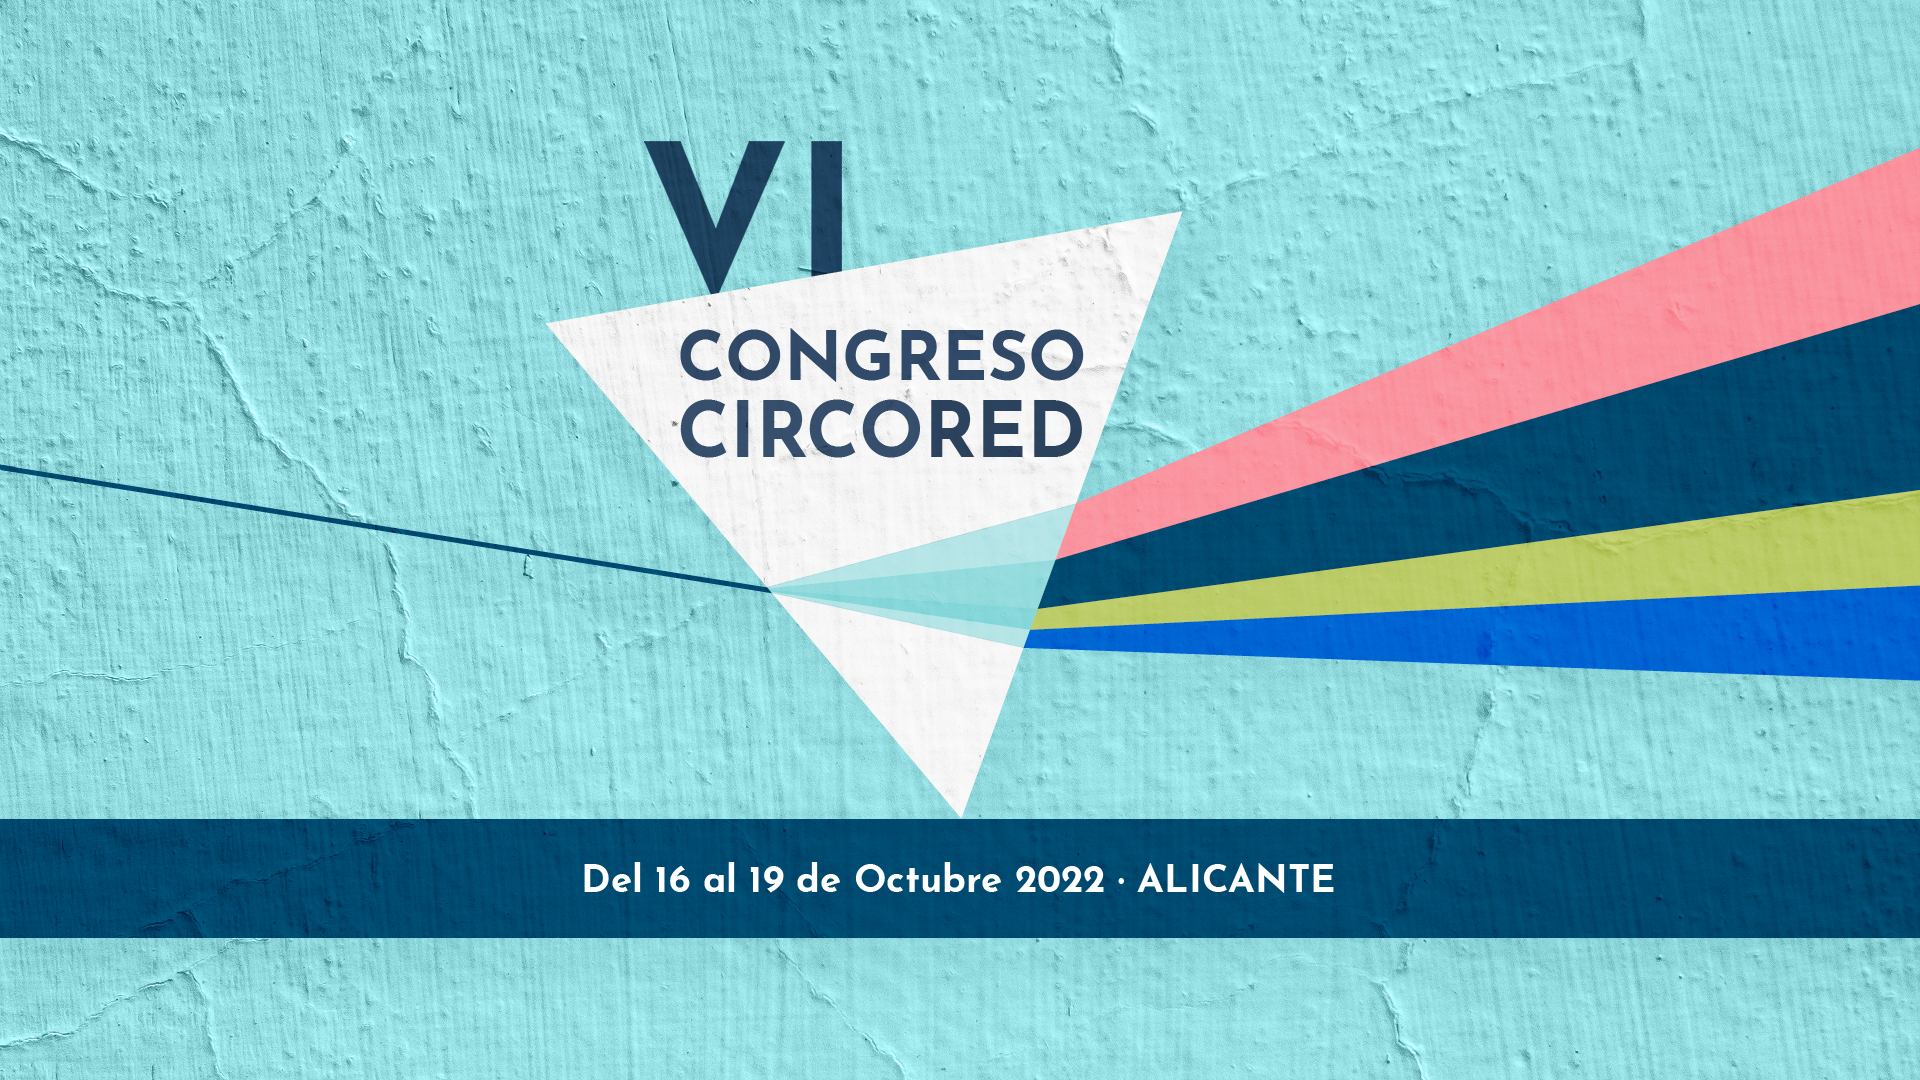 VICongresoCircoRED_Alicante